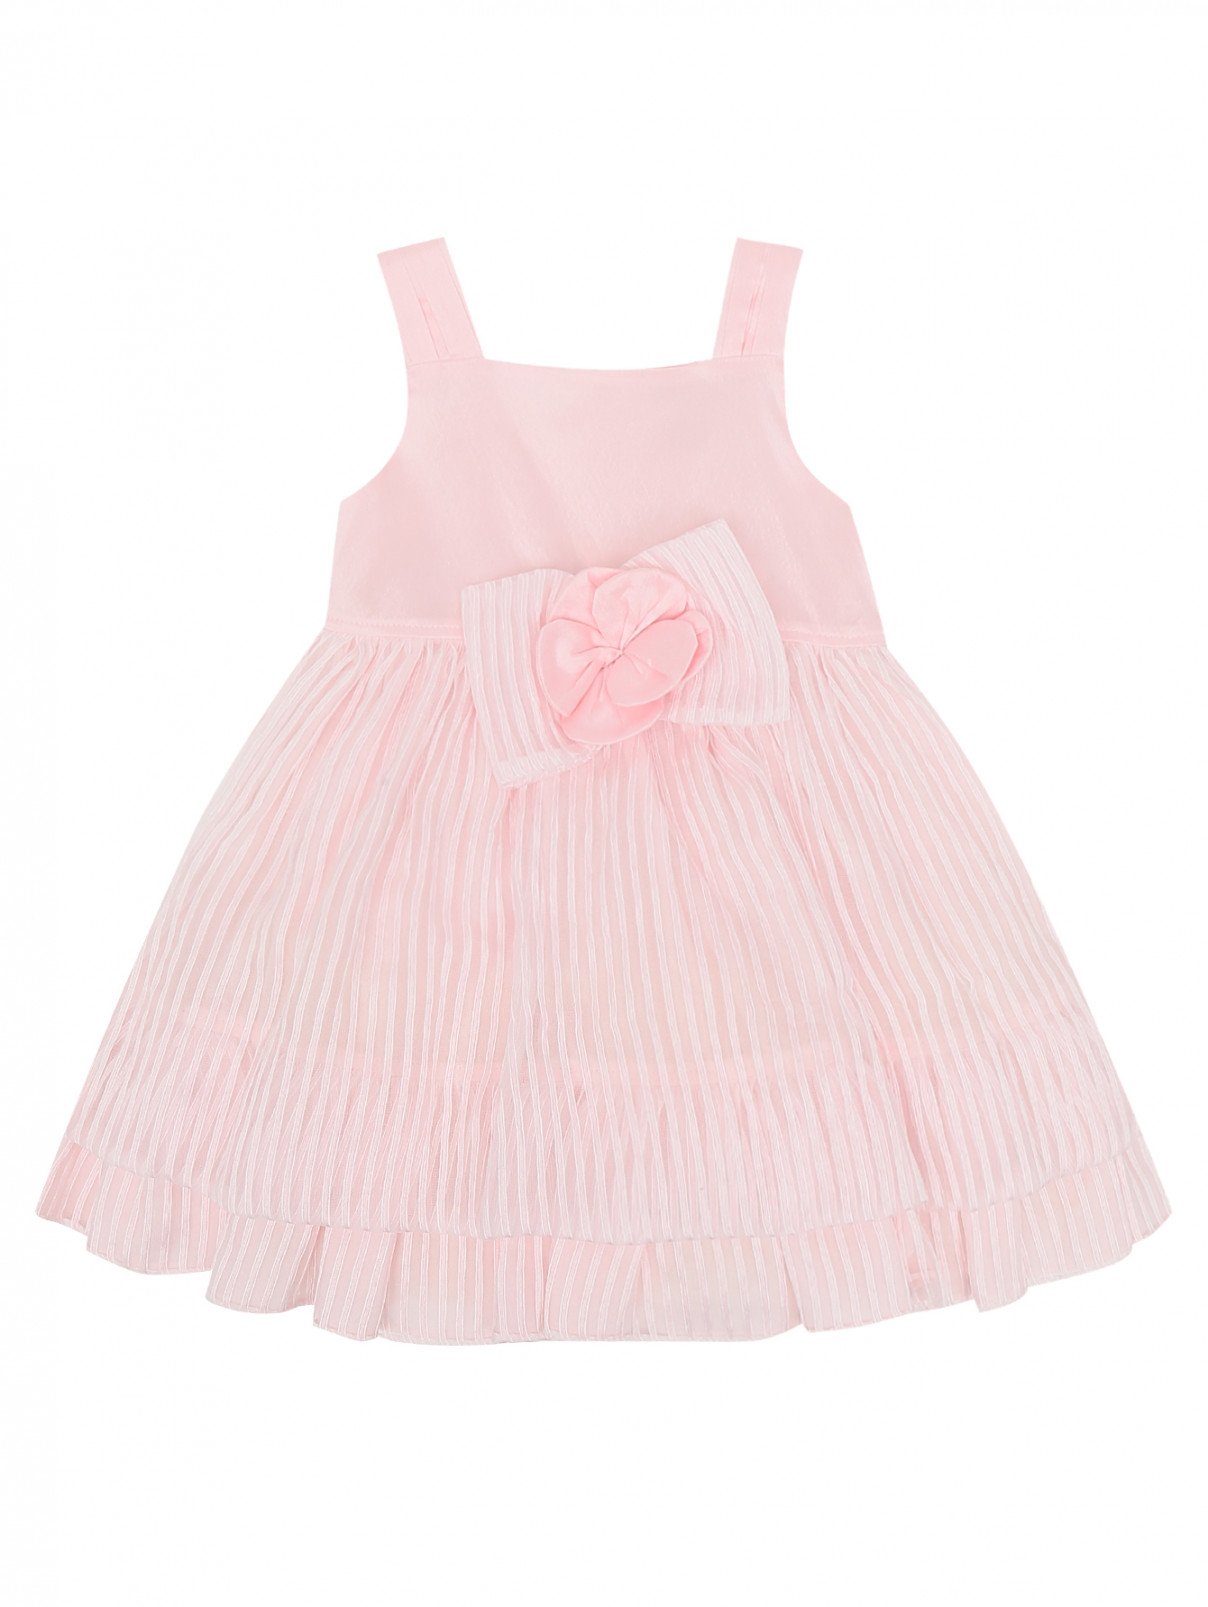 Платье на завышенной талии с бантиком Aletta  –  Общий вид  – Цвет:  Розовый